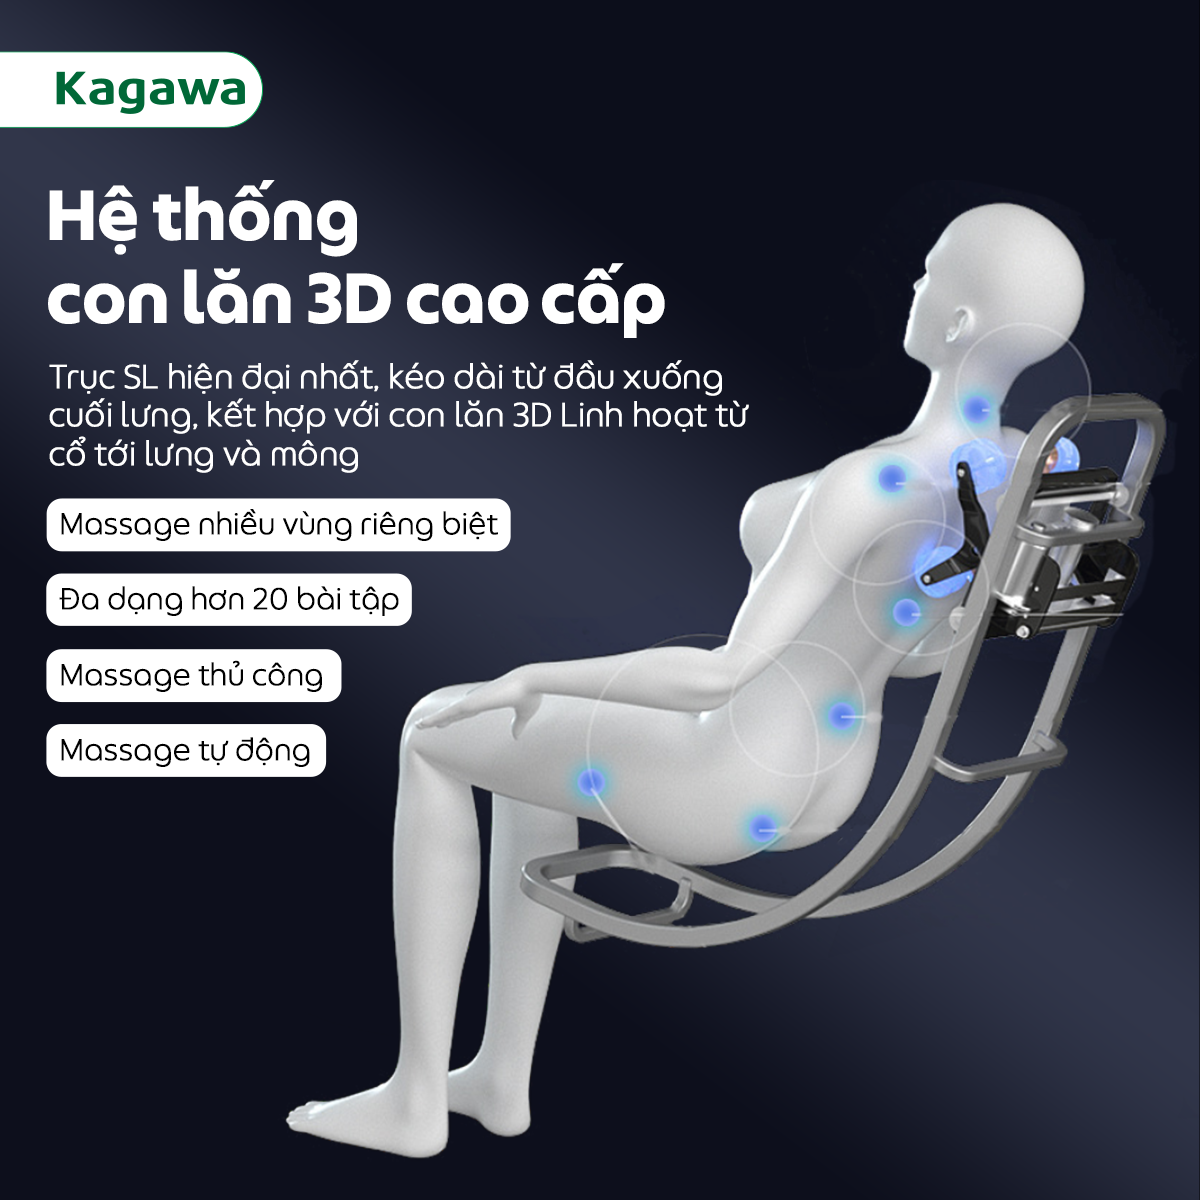 Ghế massage trị liệu toàn thân KAGAWA K28 [FULL QUÀ TẶNG] công nghệ mát xa nhiệt hồng ngoại tân tiến giúp thư giãn, giảm stress tại nhà